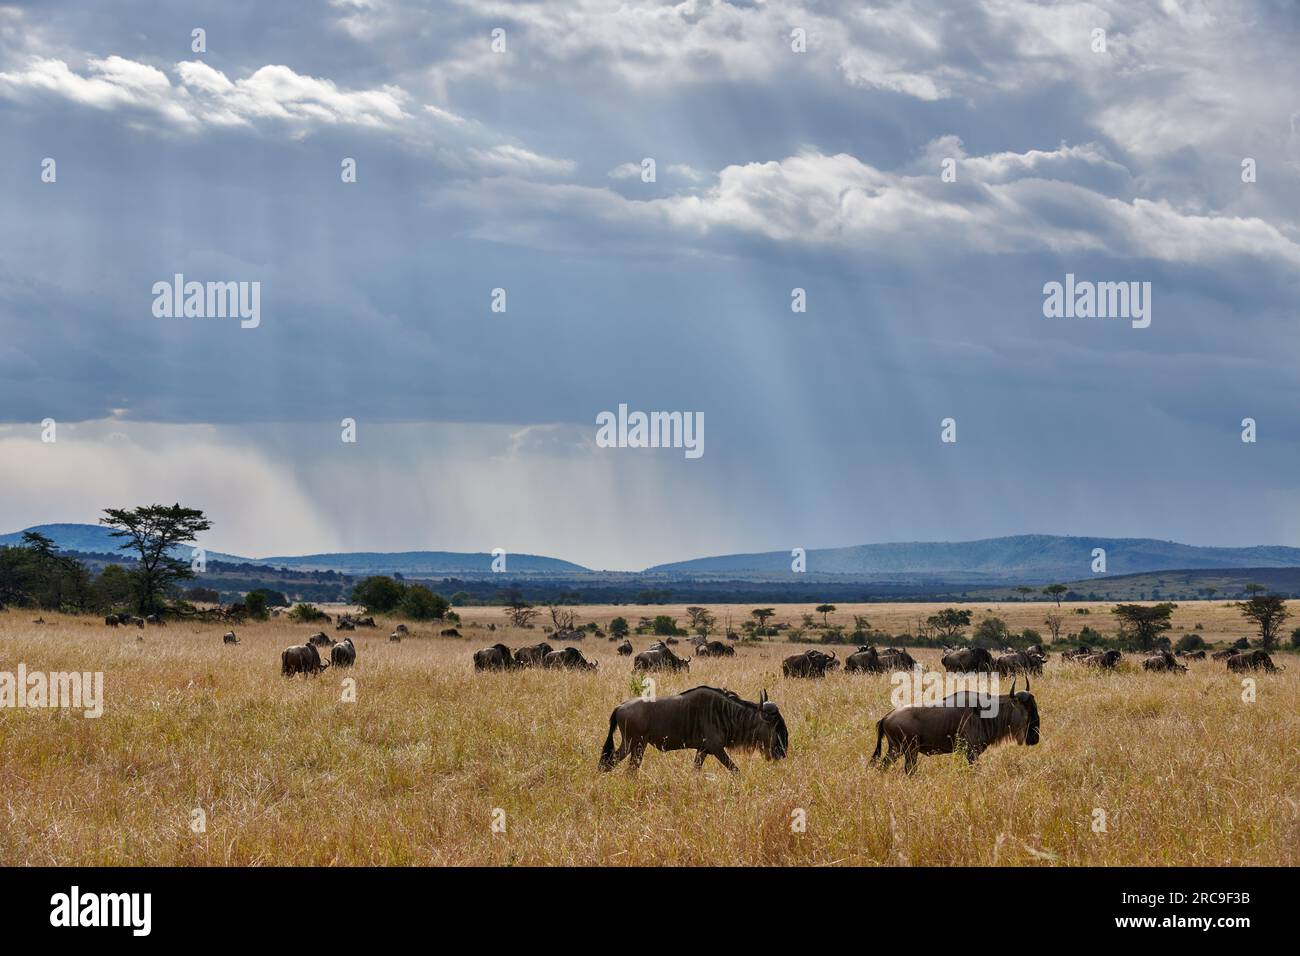 Weißbartgnus (Connochaetes mearnsi) auf der grossen Migration durch den Serengeti National Park, Tansania, Afrika |blue wildebeest (Connochaetes mearn Stock Photo